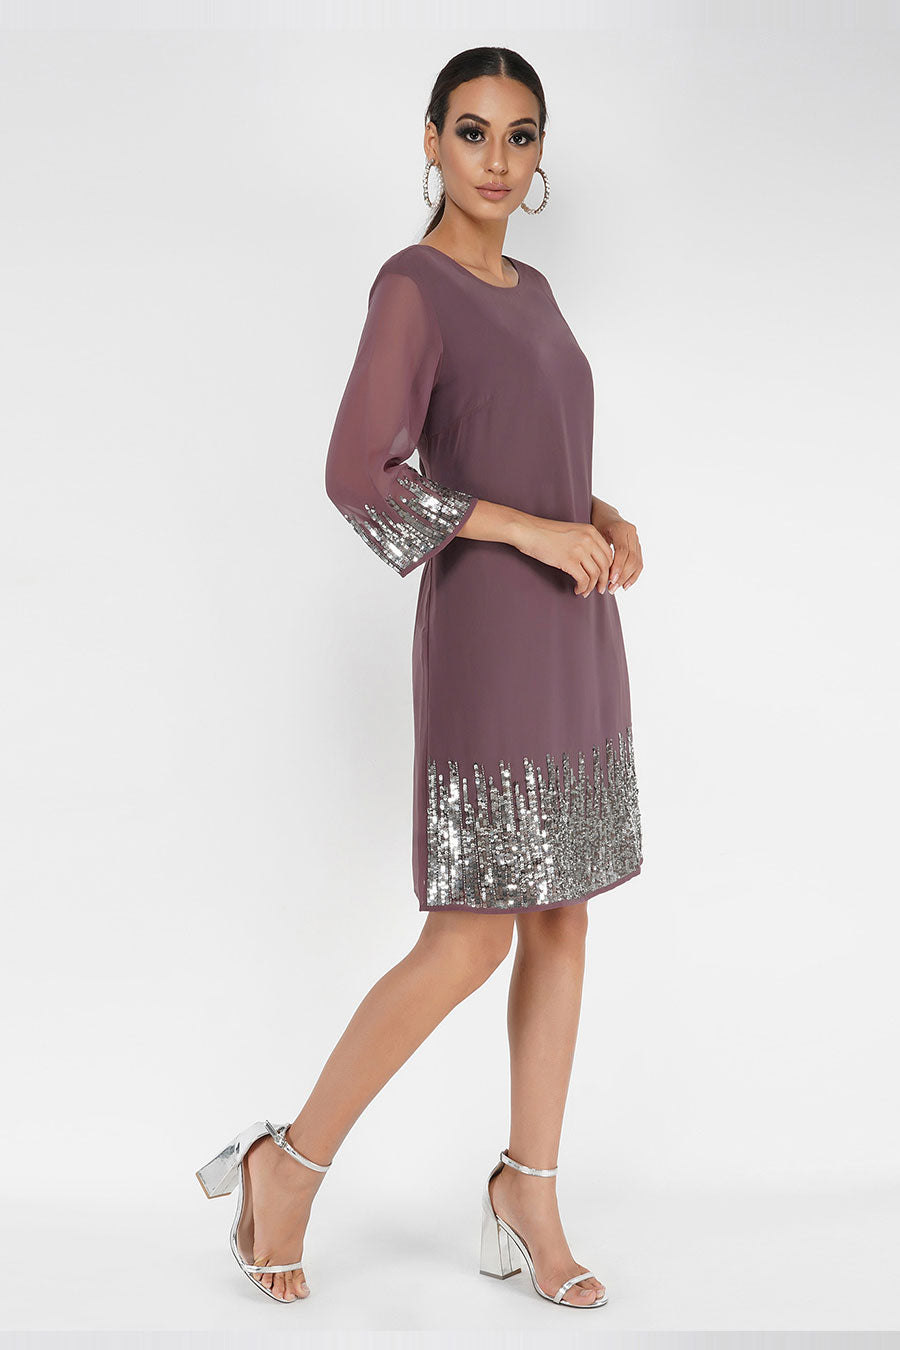 Plum Sequin Embellished Dress